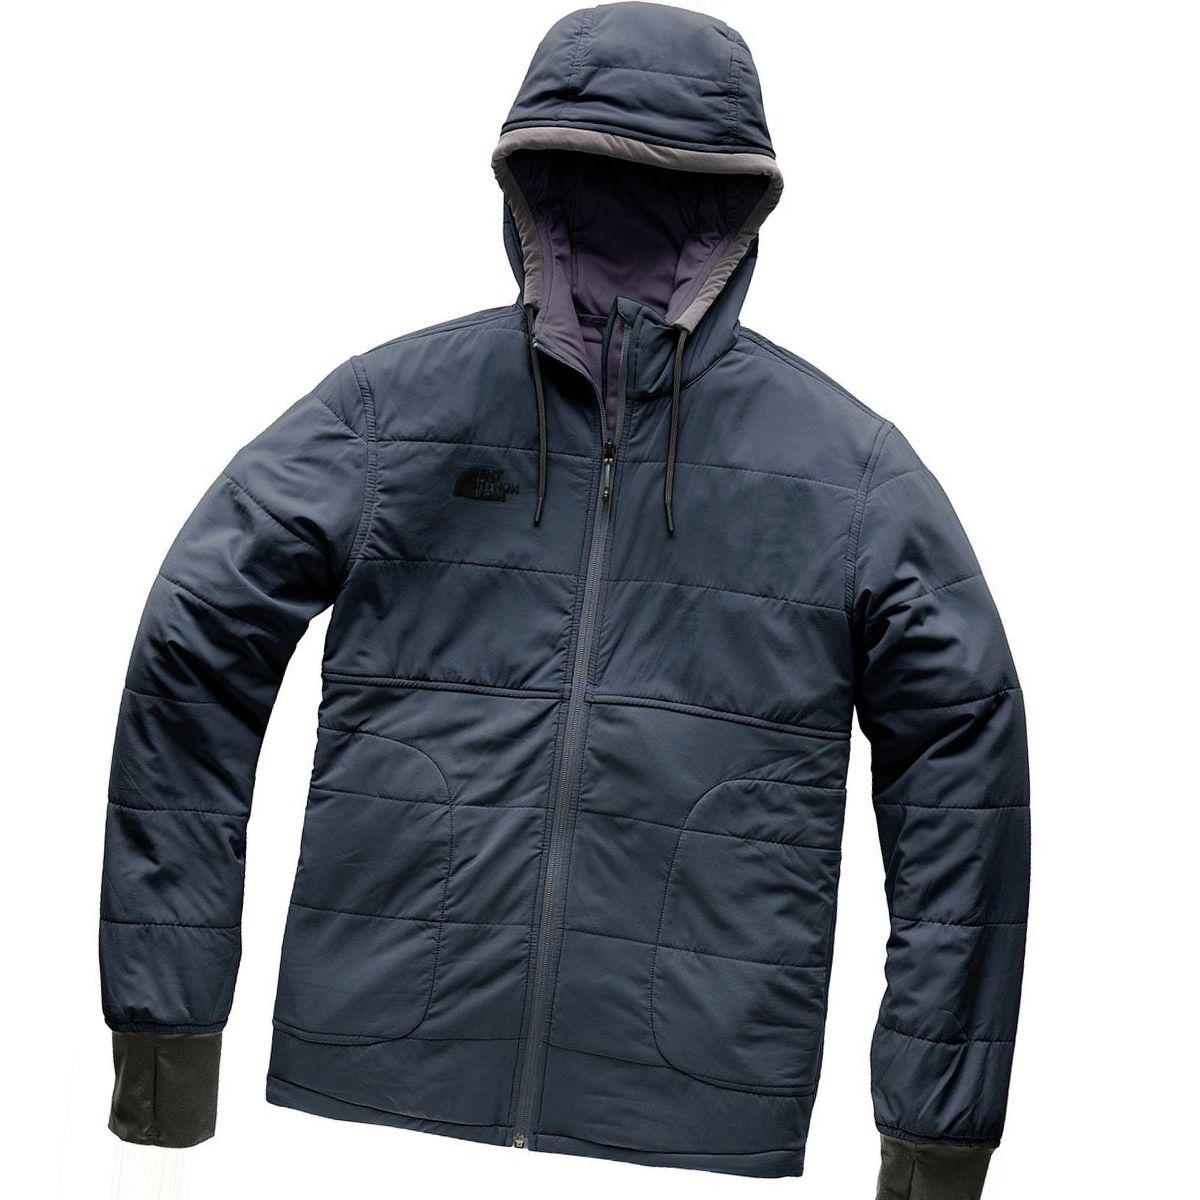 The North Face Mountain Sweatshirt 2.0 Full-Zip Hoodie - Men's